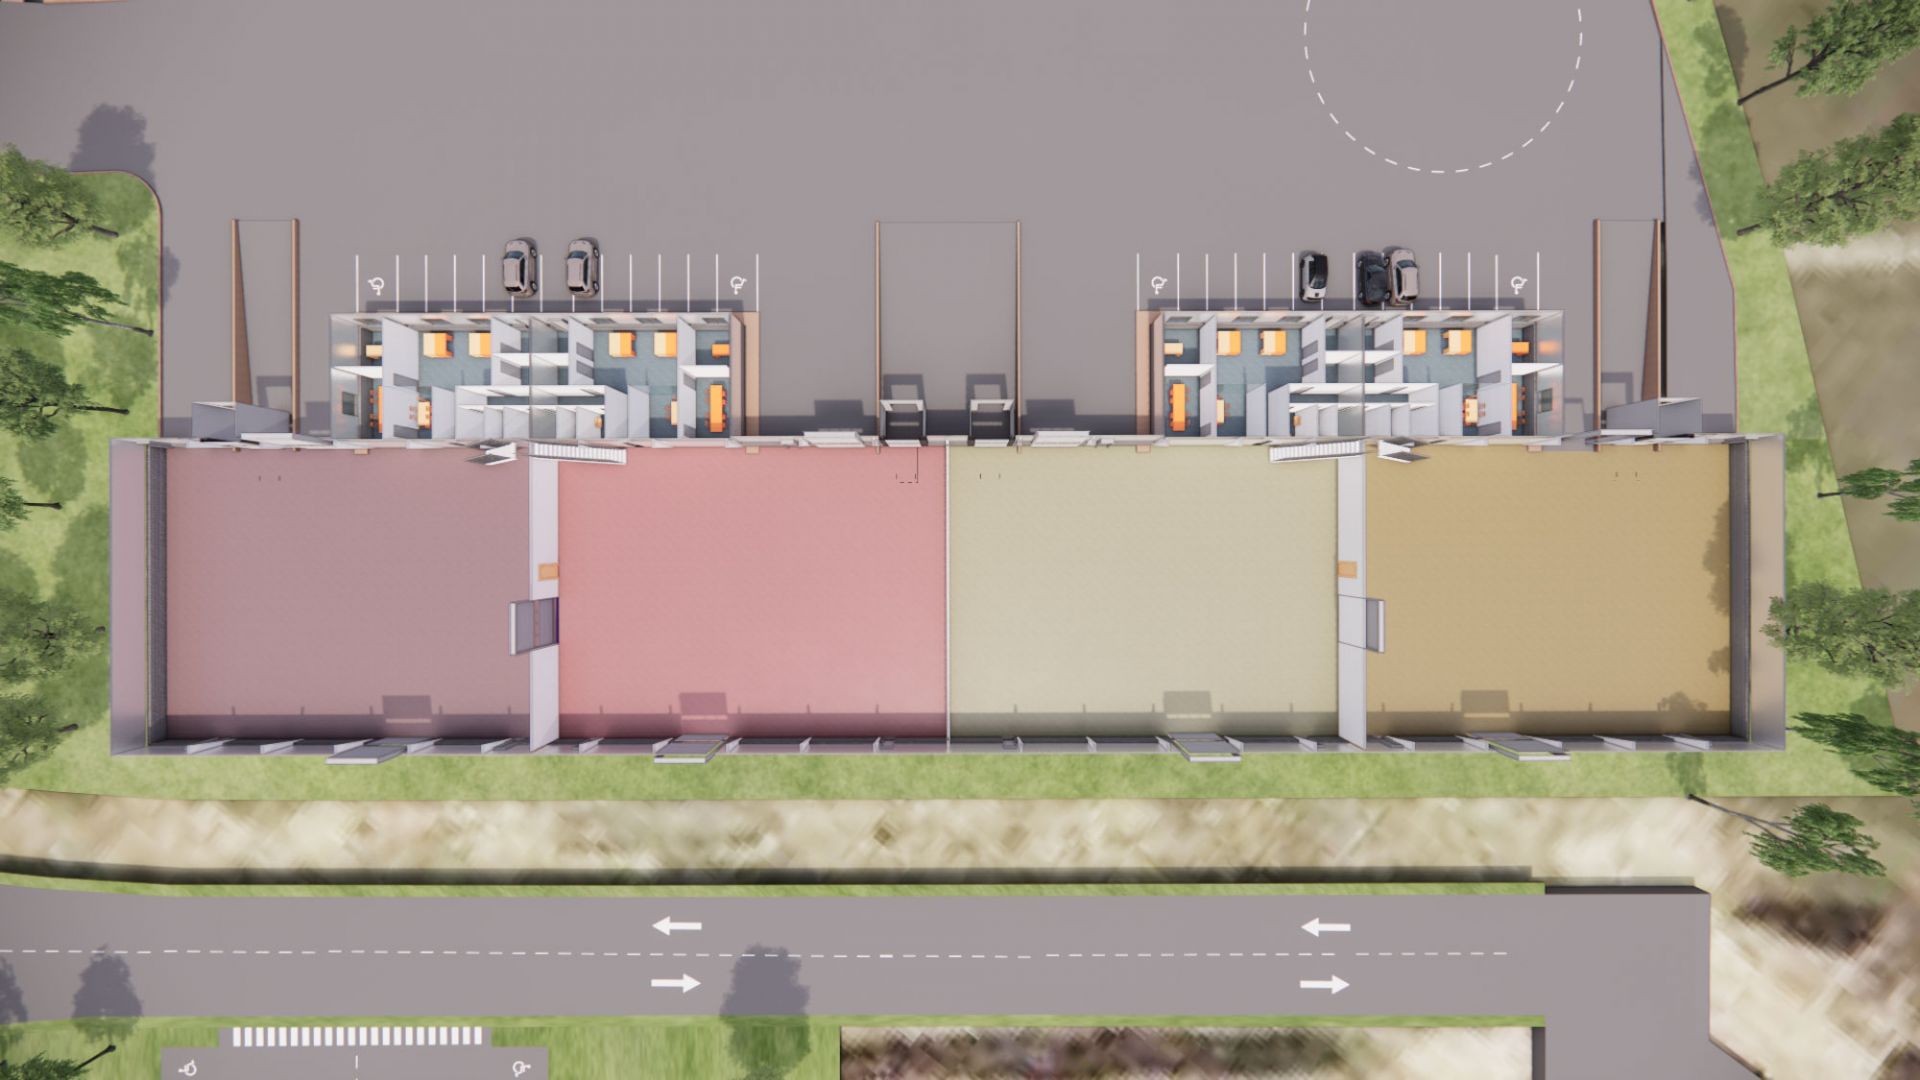 Animierter Plan der Innenaufteilung der Hallen in vier etwa gleich große Bereiche mit jeweils einem Büroteil, Parkplätzen und LKW-Entladungsmöglichkeit.